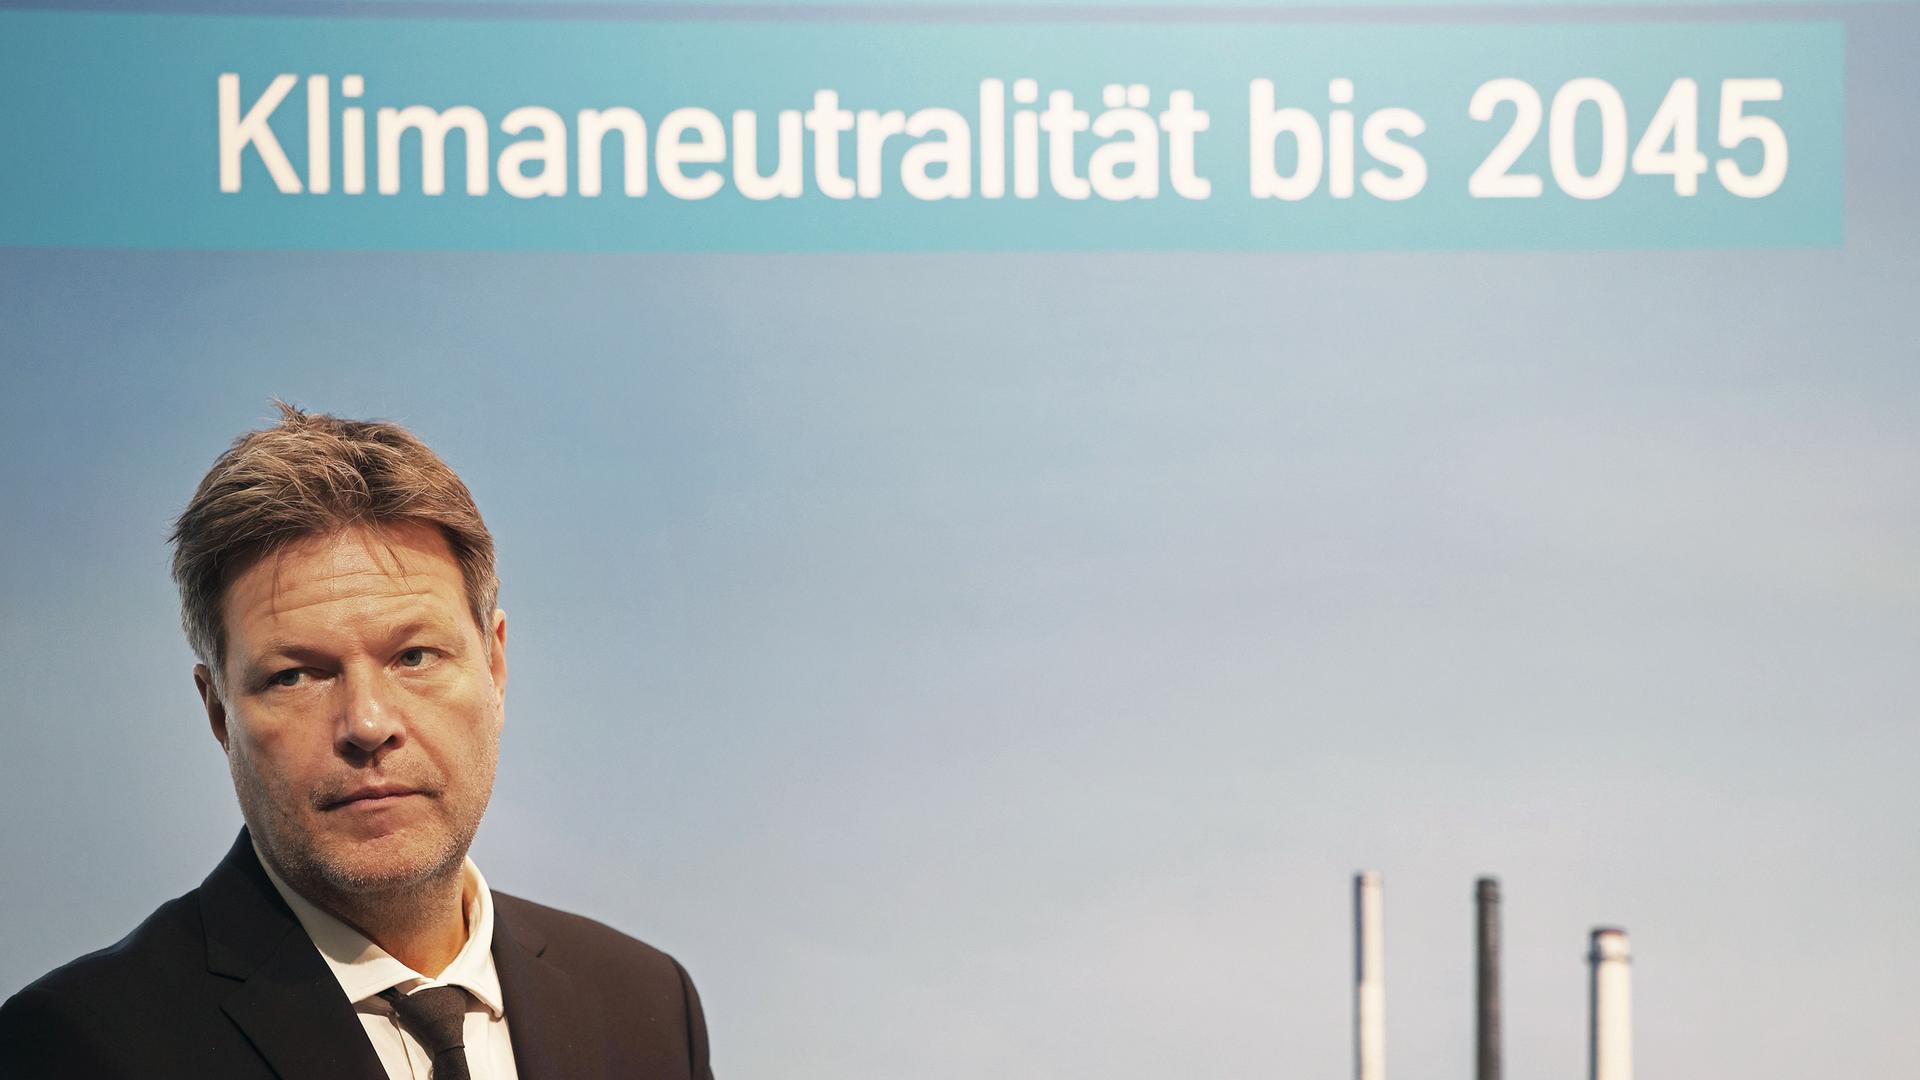 Robert Habeck (Bündnis 90/Die Grünen), Bundesminister für Wirtschaft und Klimaschutz, steht vor einem Plakat mit Aufschrift "Klimaneutralität bis 2045". 